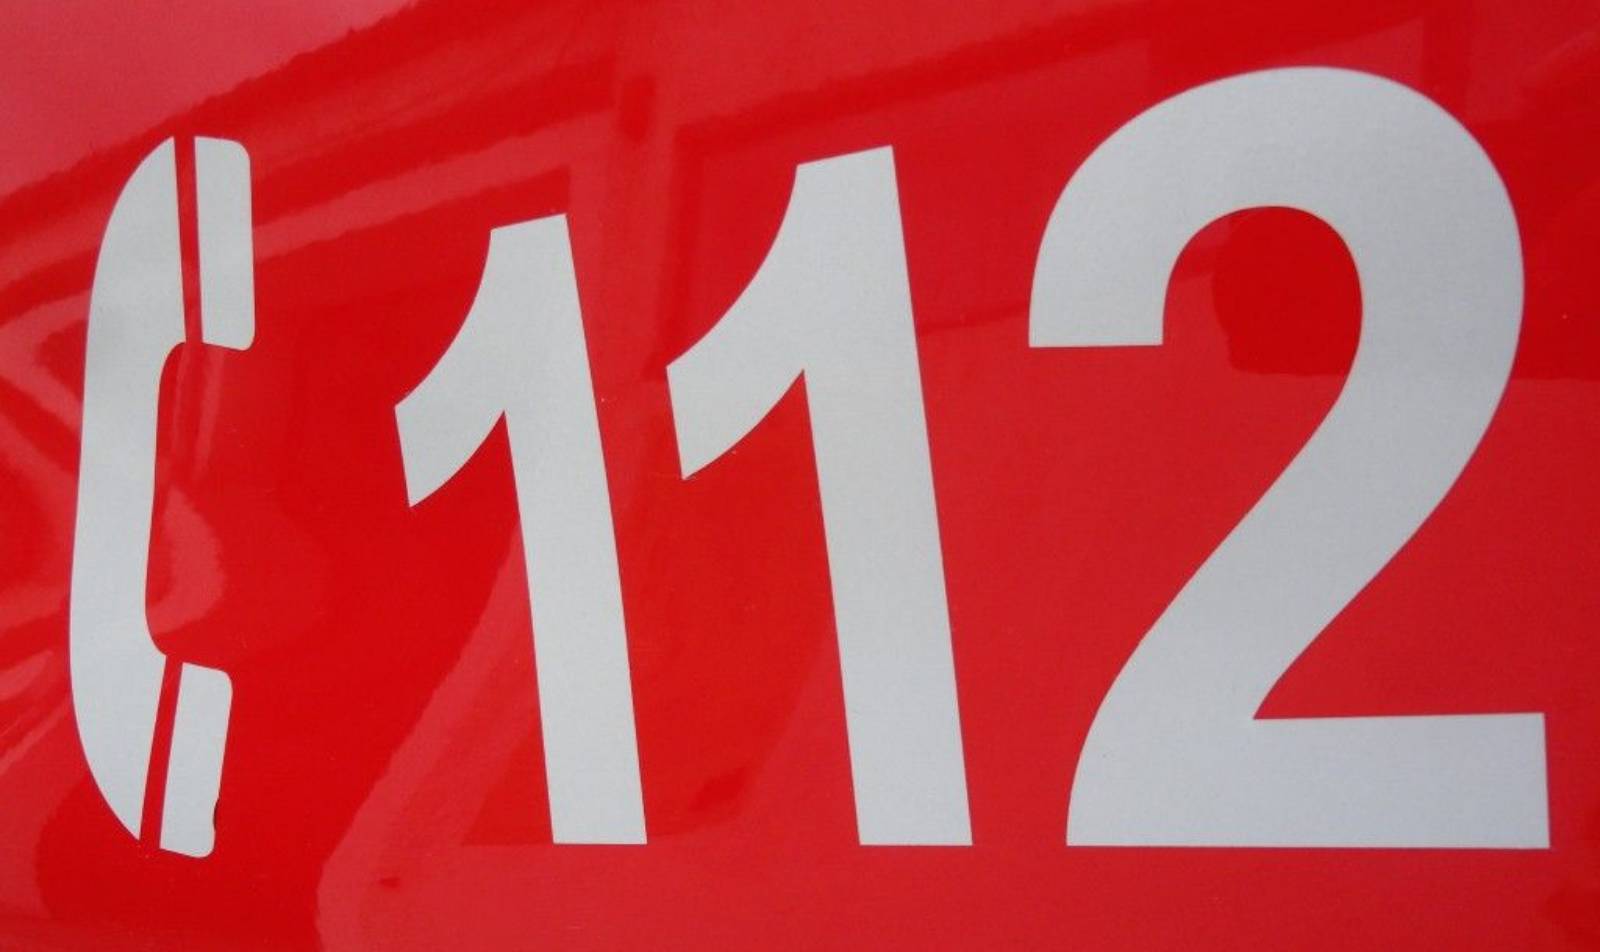 IMPORTANTE modifica al 112 già apportata dal governo rumeno